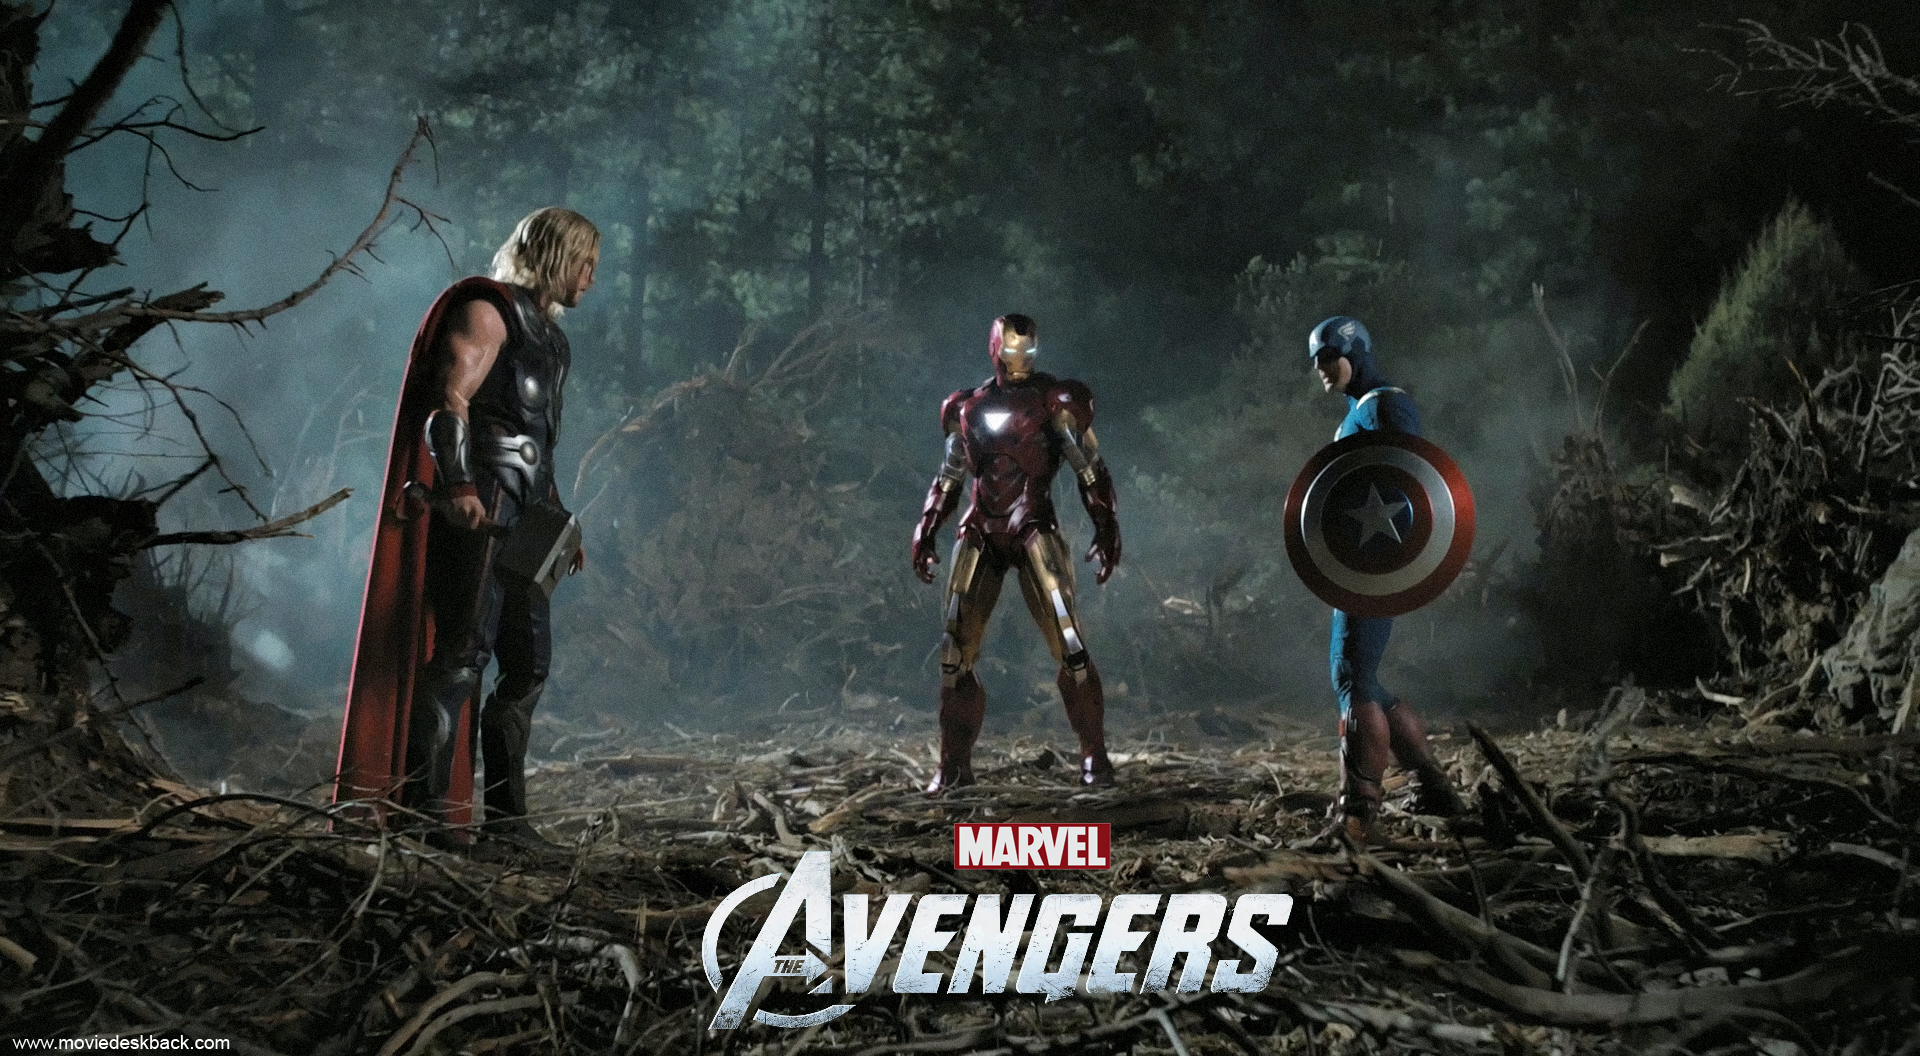 Iron Man Avengers Wallpaper Full HD - Uncalke.com